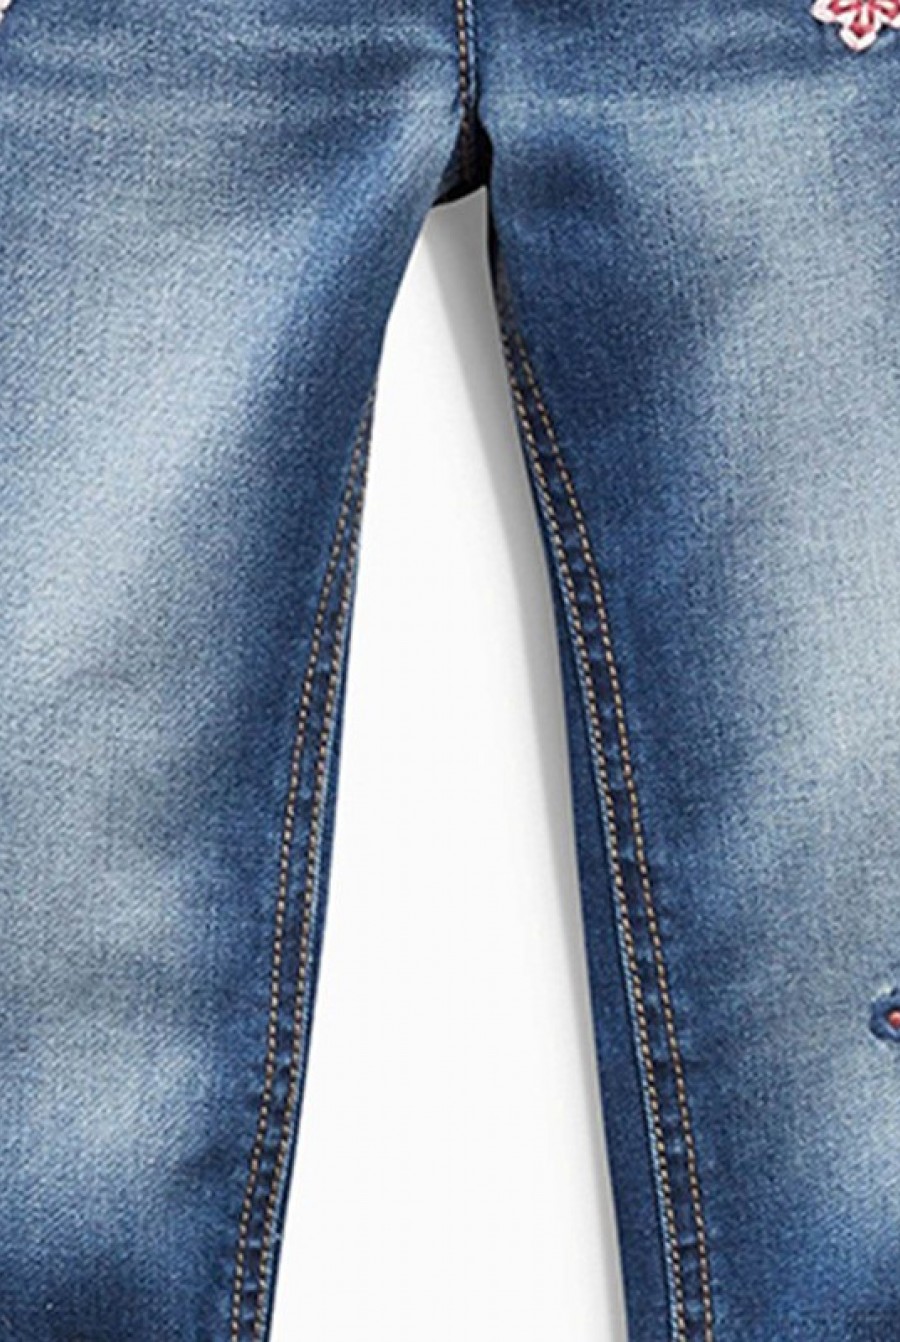 Утепленные синие джинсы-стрейч на флисе с аппликациями- Фото 3